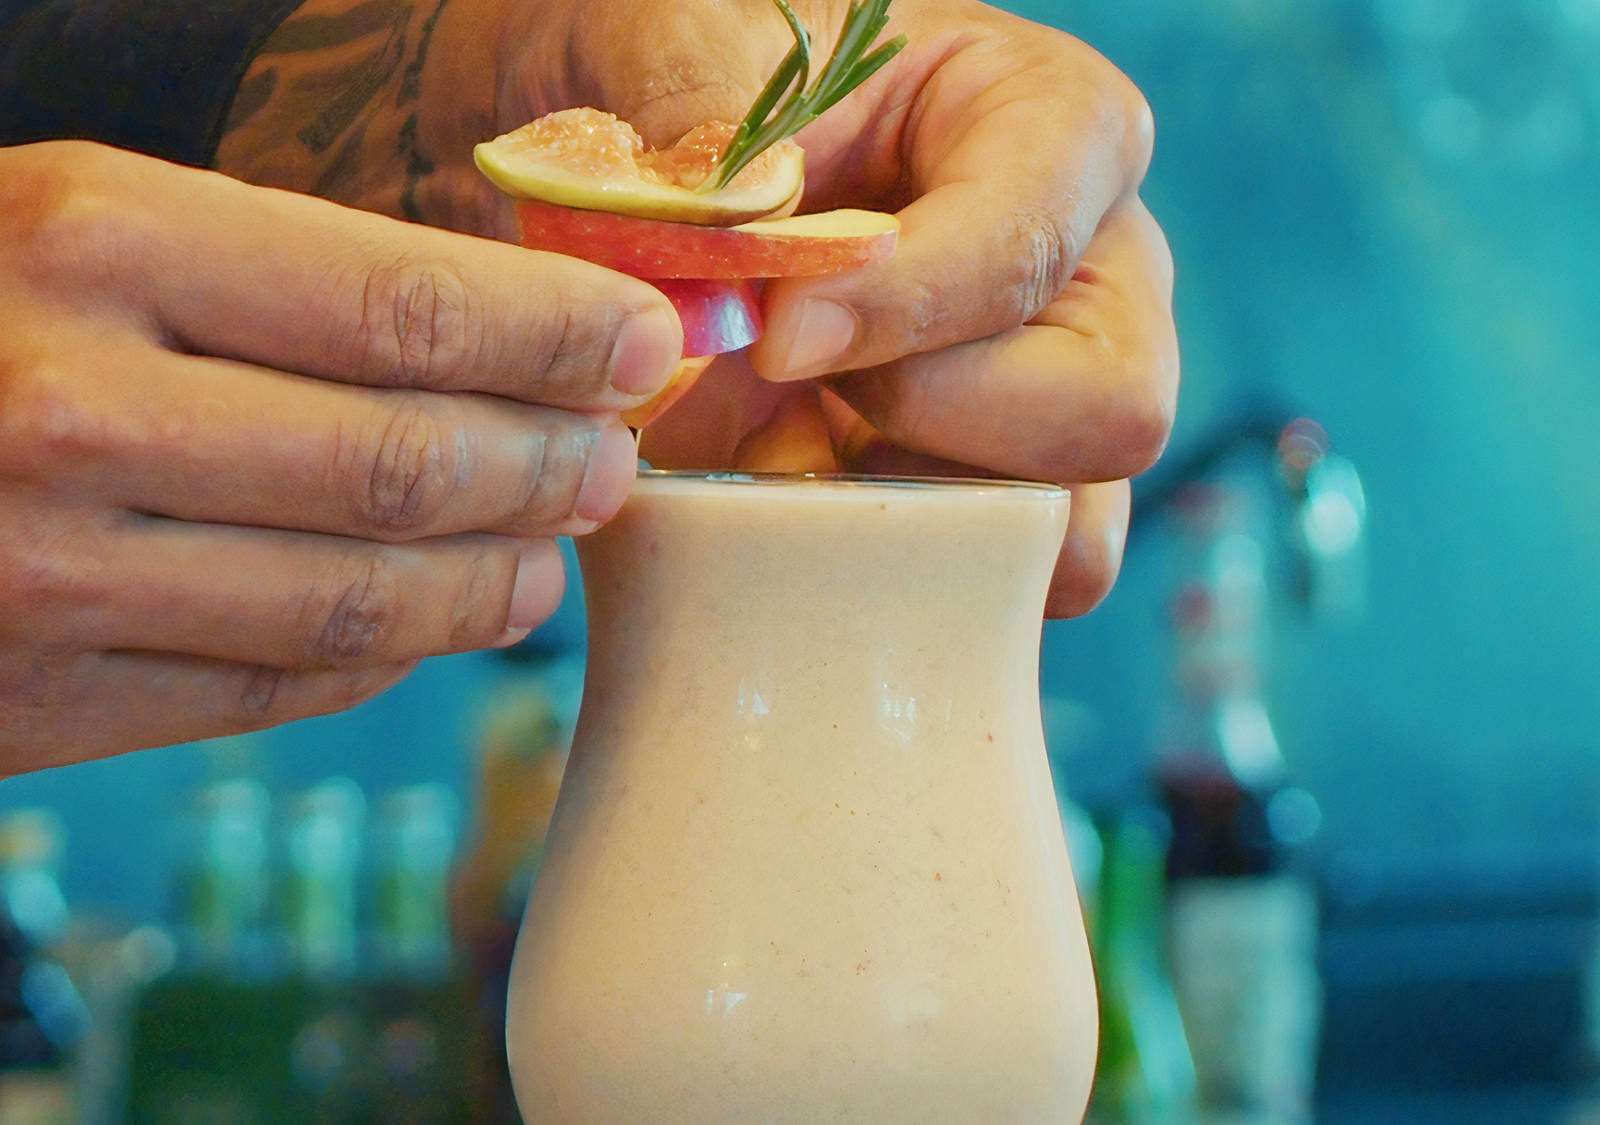 Rezept für Apple Cinnamon Hygge – der skandinavische Mocktail